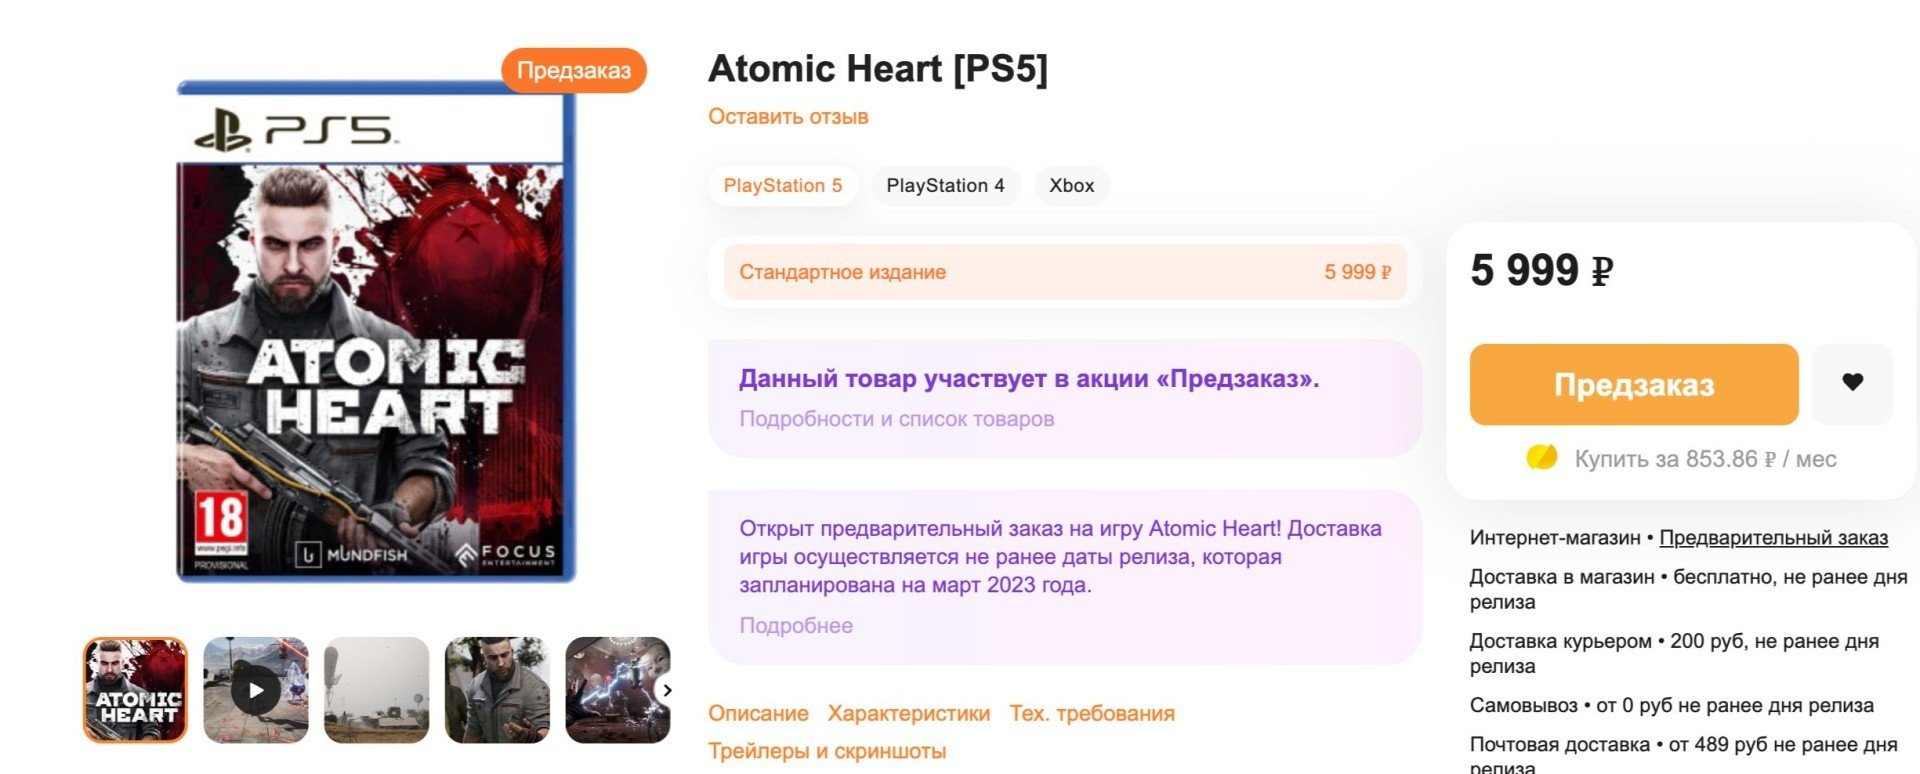 Дисковая версия русского шутера Atomic Heart будет стоить 6000 рублей